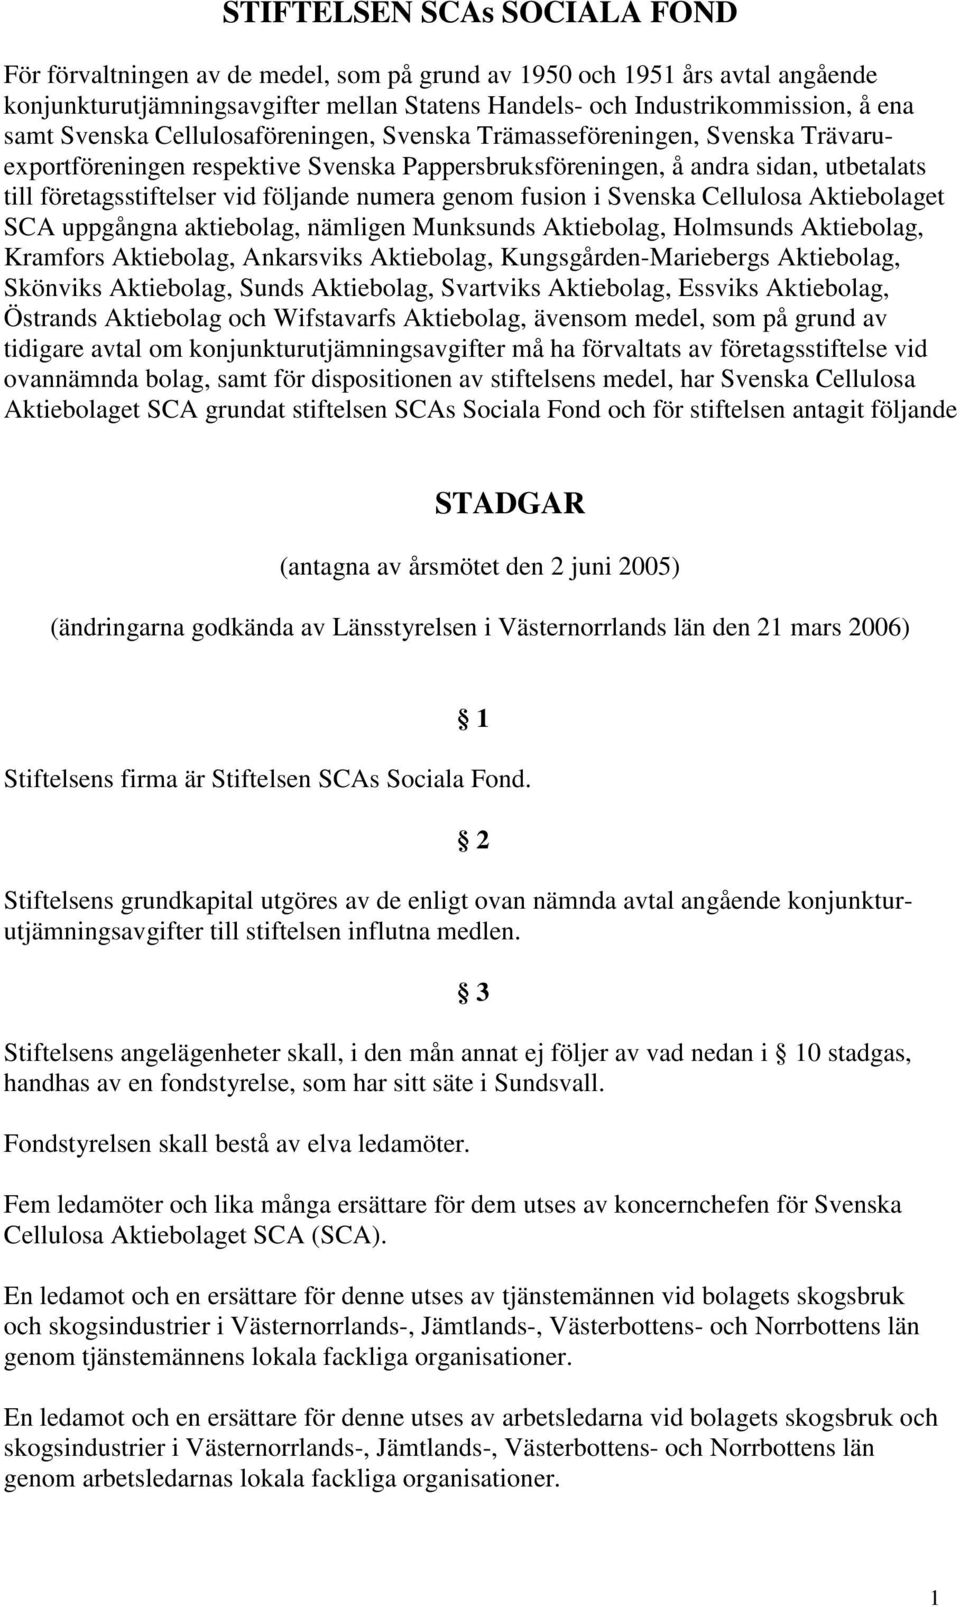 STIFTELSEN SCAs SOCIALA FOND STADGAR - PDF Gratis nedladdning